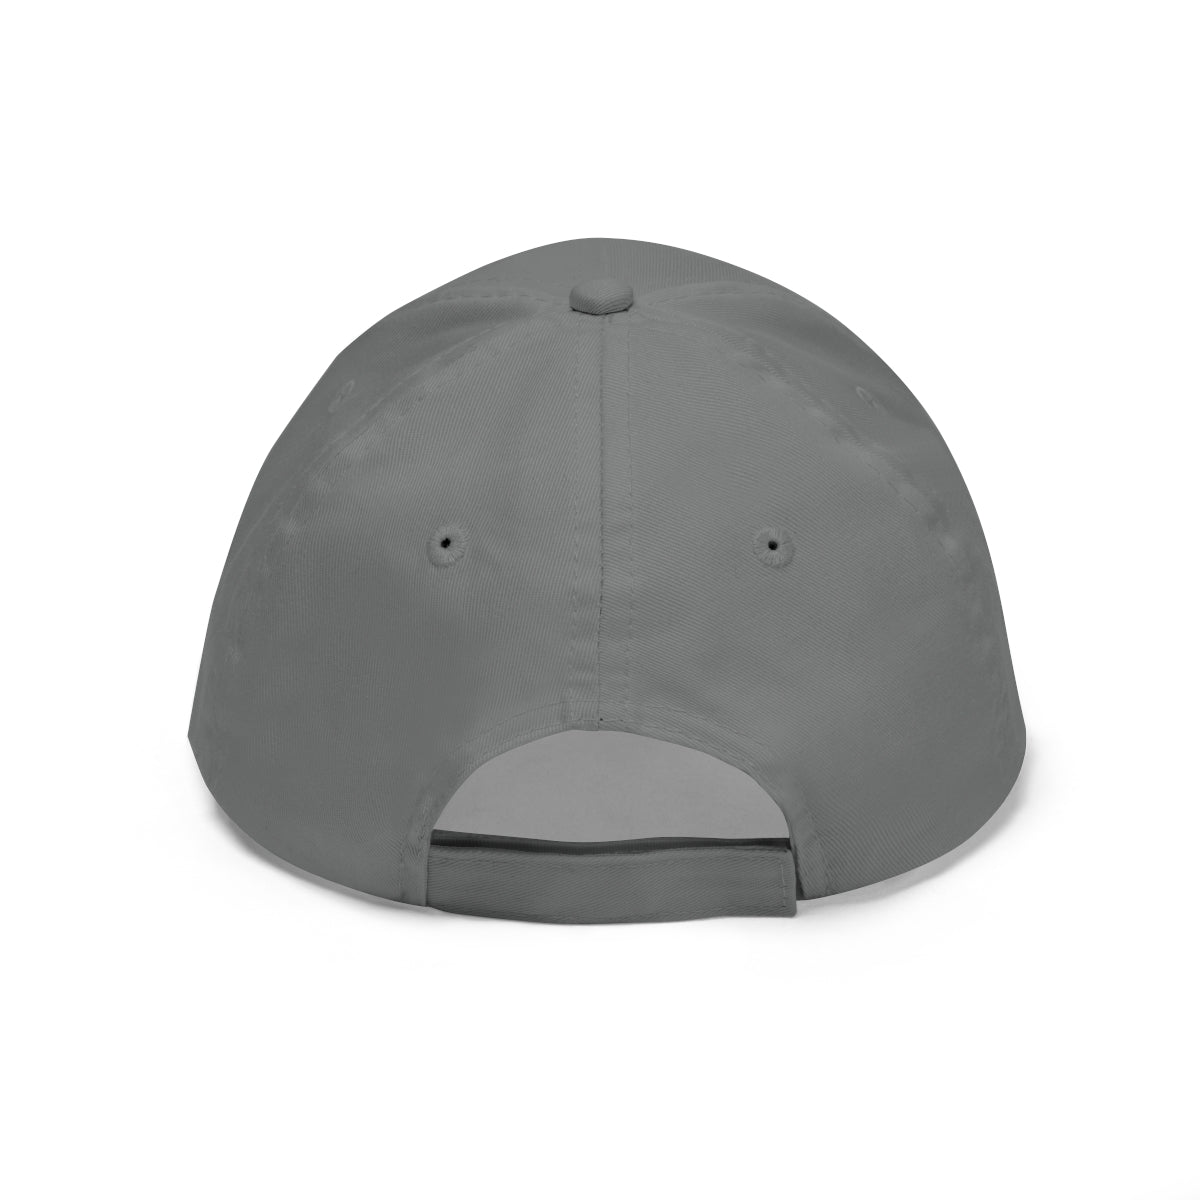 Midwest Heat White Scheme - Unisex Twill Hat